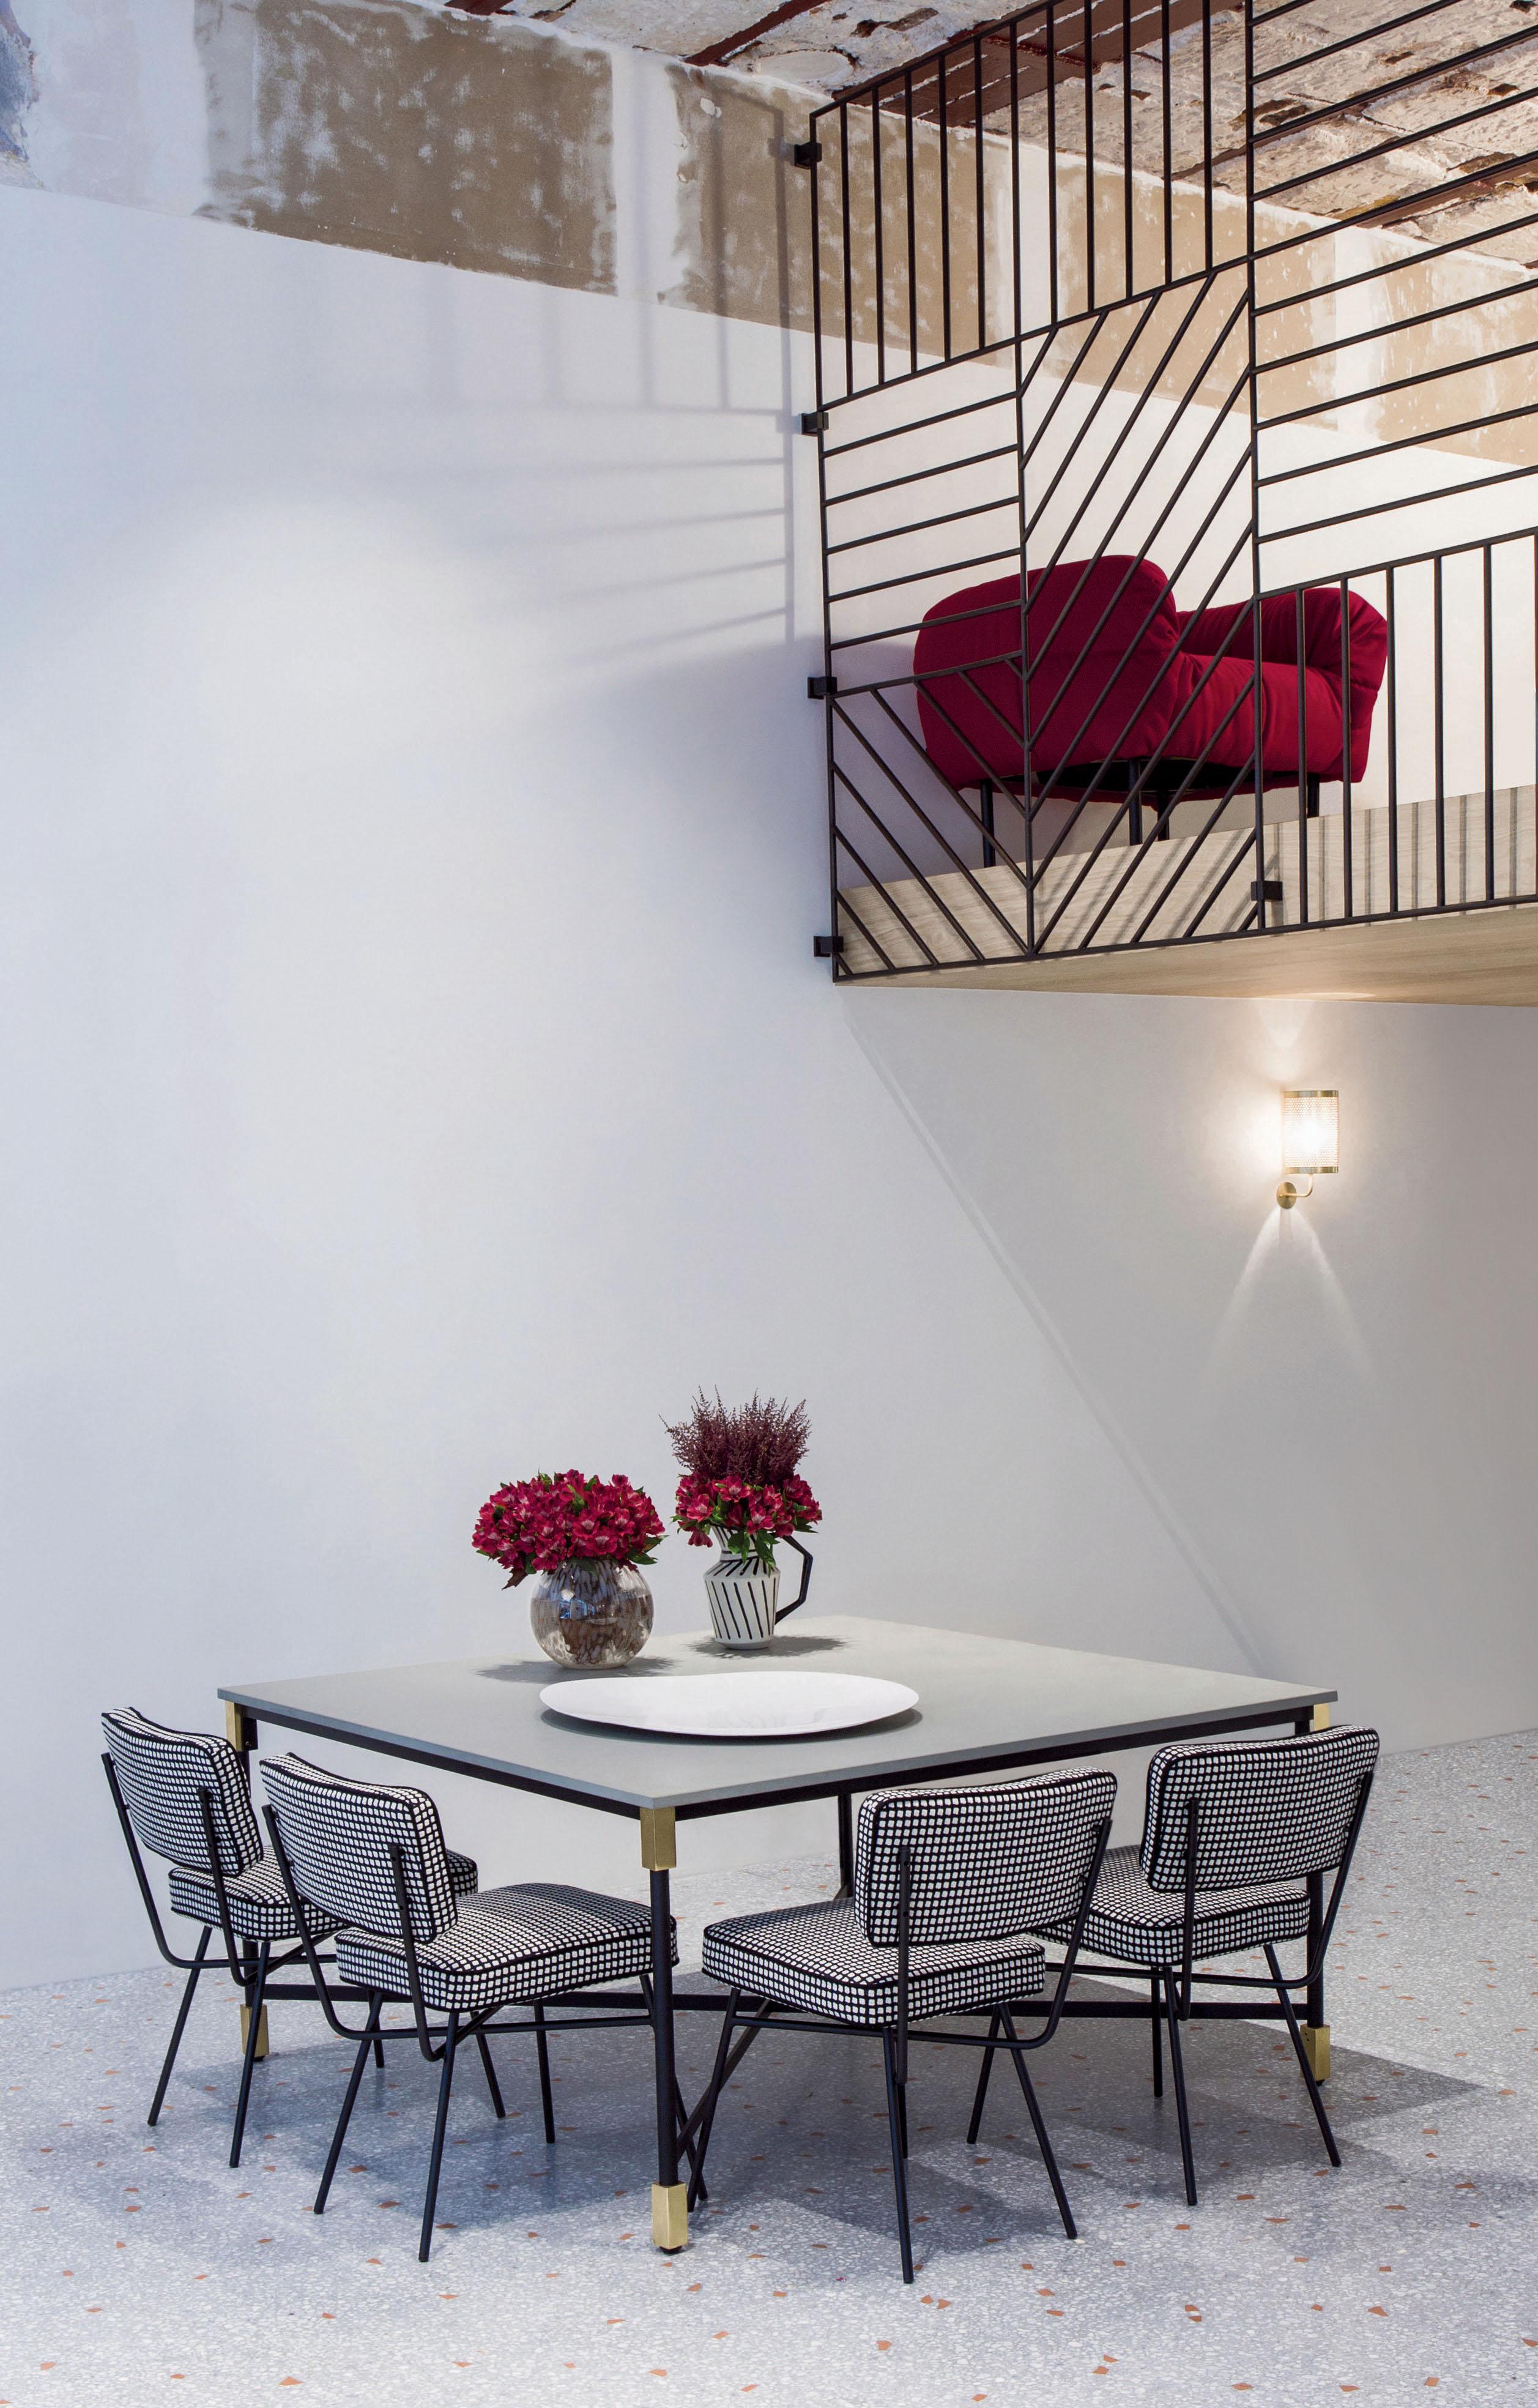 Elettra ist ein Klassiker des 50er-Jahre-Büros und ein Sitzmöbel, auf das man nicht verzichten kann. Dank seines zeitlosen Stils und seiner eleganten Proportionen passt er sich perfekt an jeden Raum an.

MATERIALIEN: Gepolsterter Stoff 
Farbe: